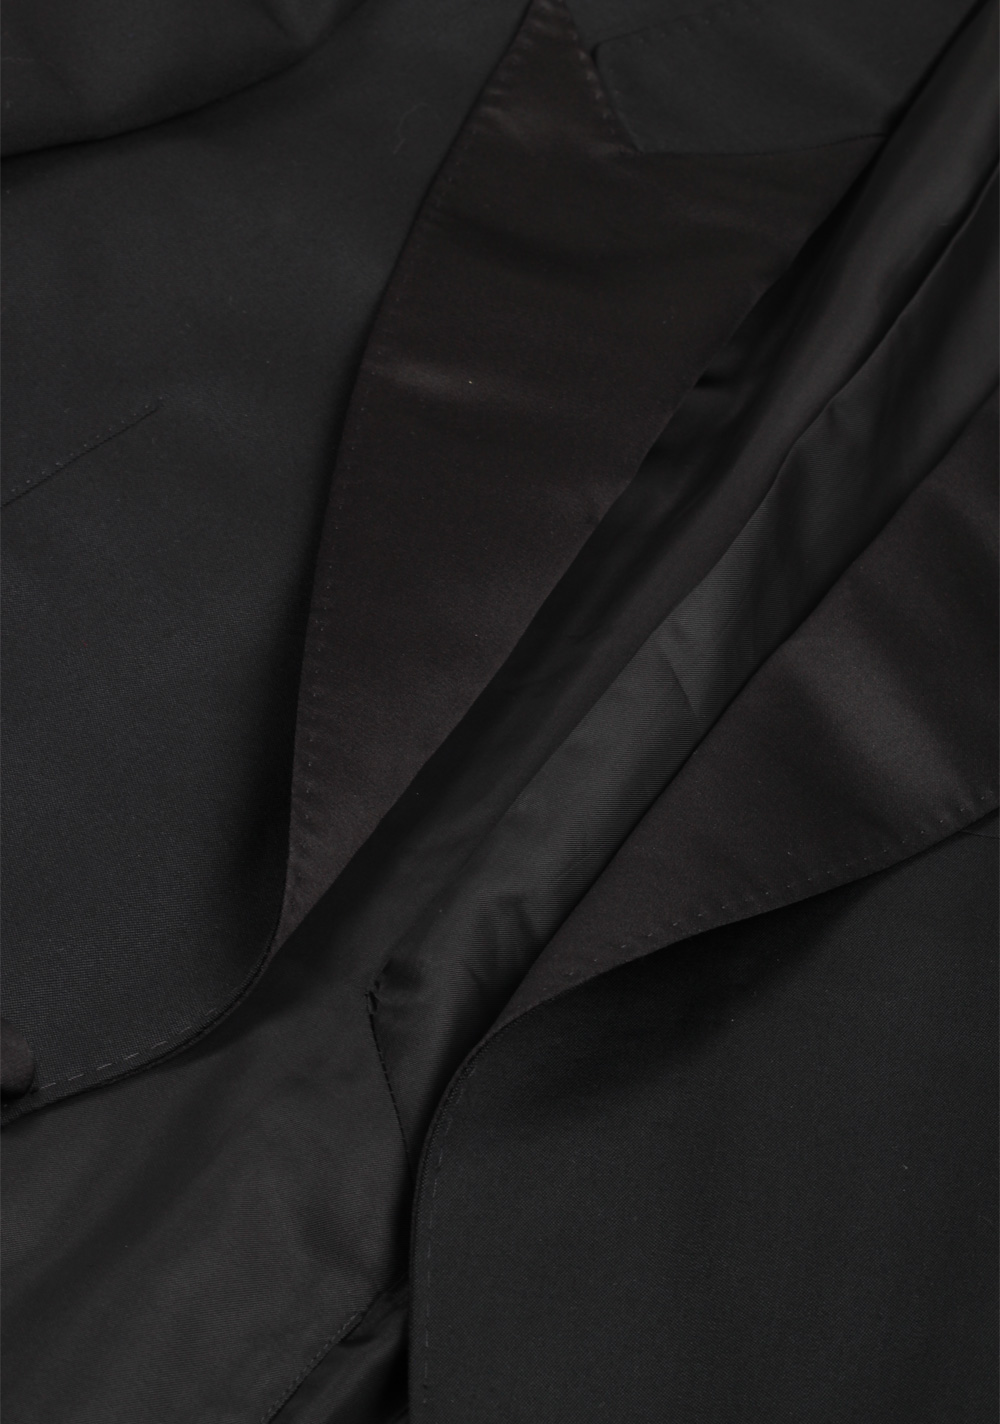 TOM FORD Shelton Black Tuxedo Suit | Costume Limité